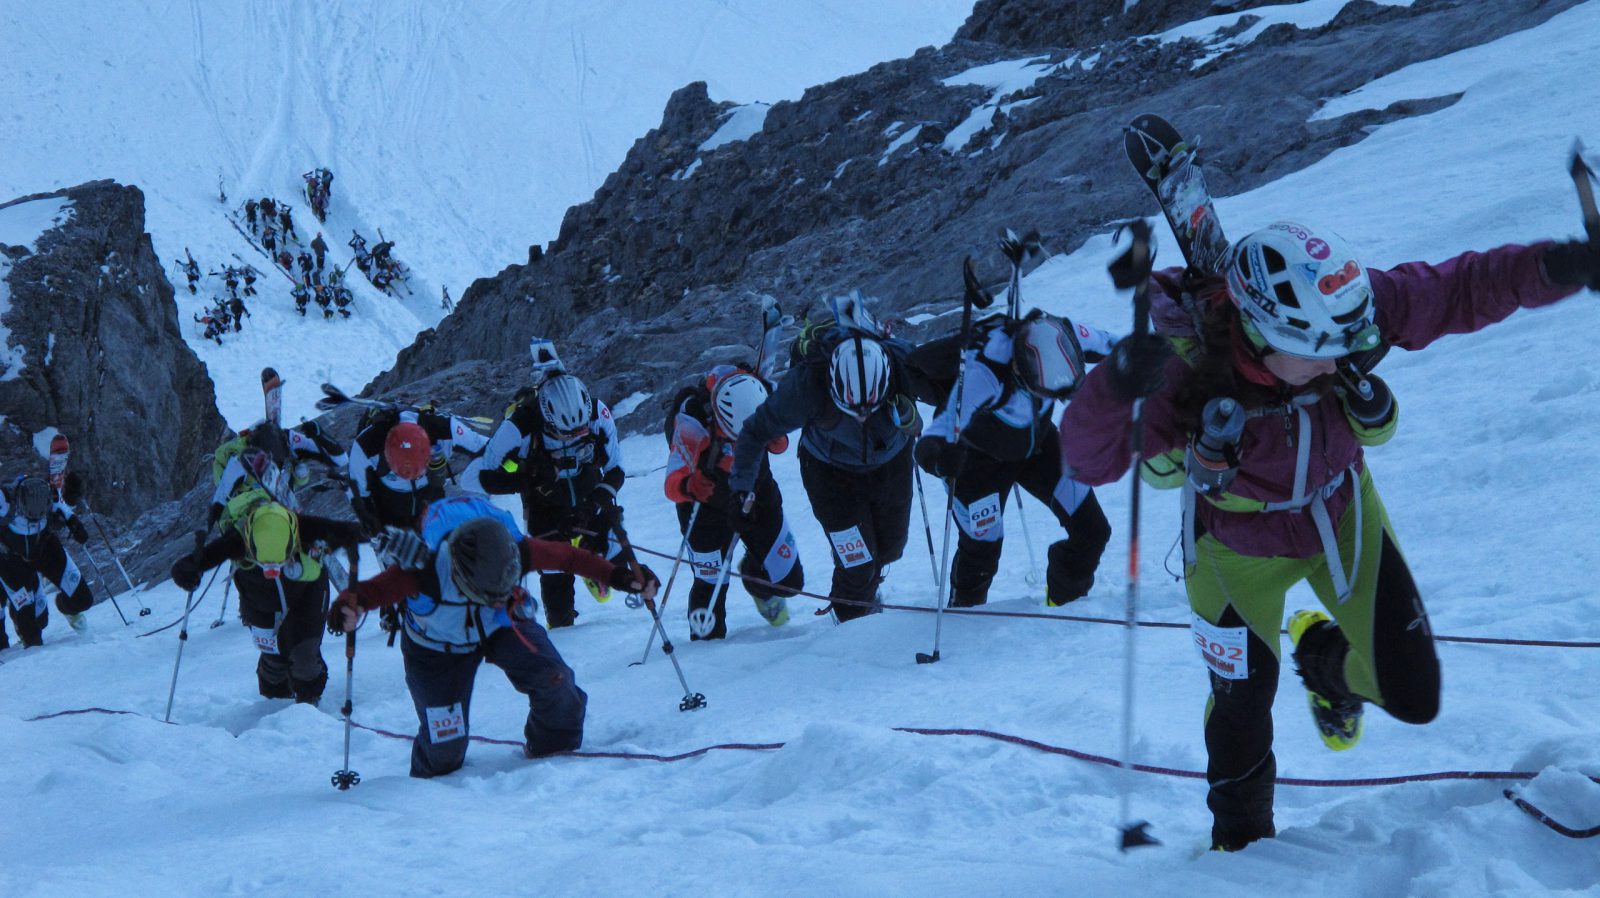 Ski alpinisme: La 76ème édition des Trophées du Muveran n'aura pas lieu